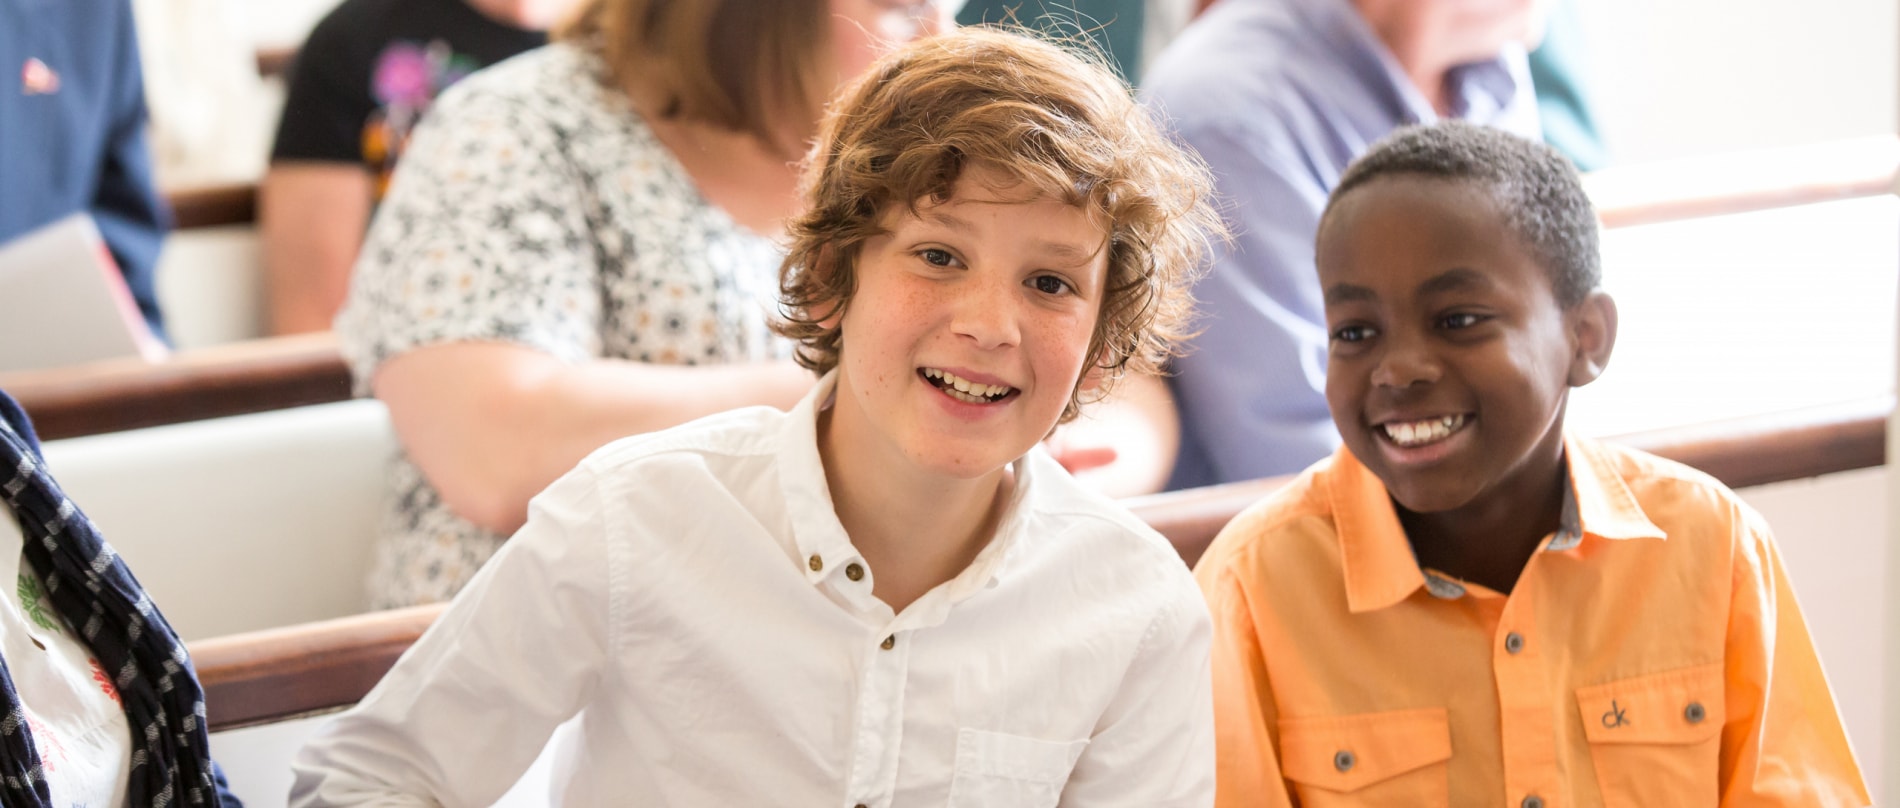 Two teenage boys smile during worship